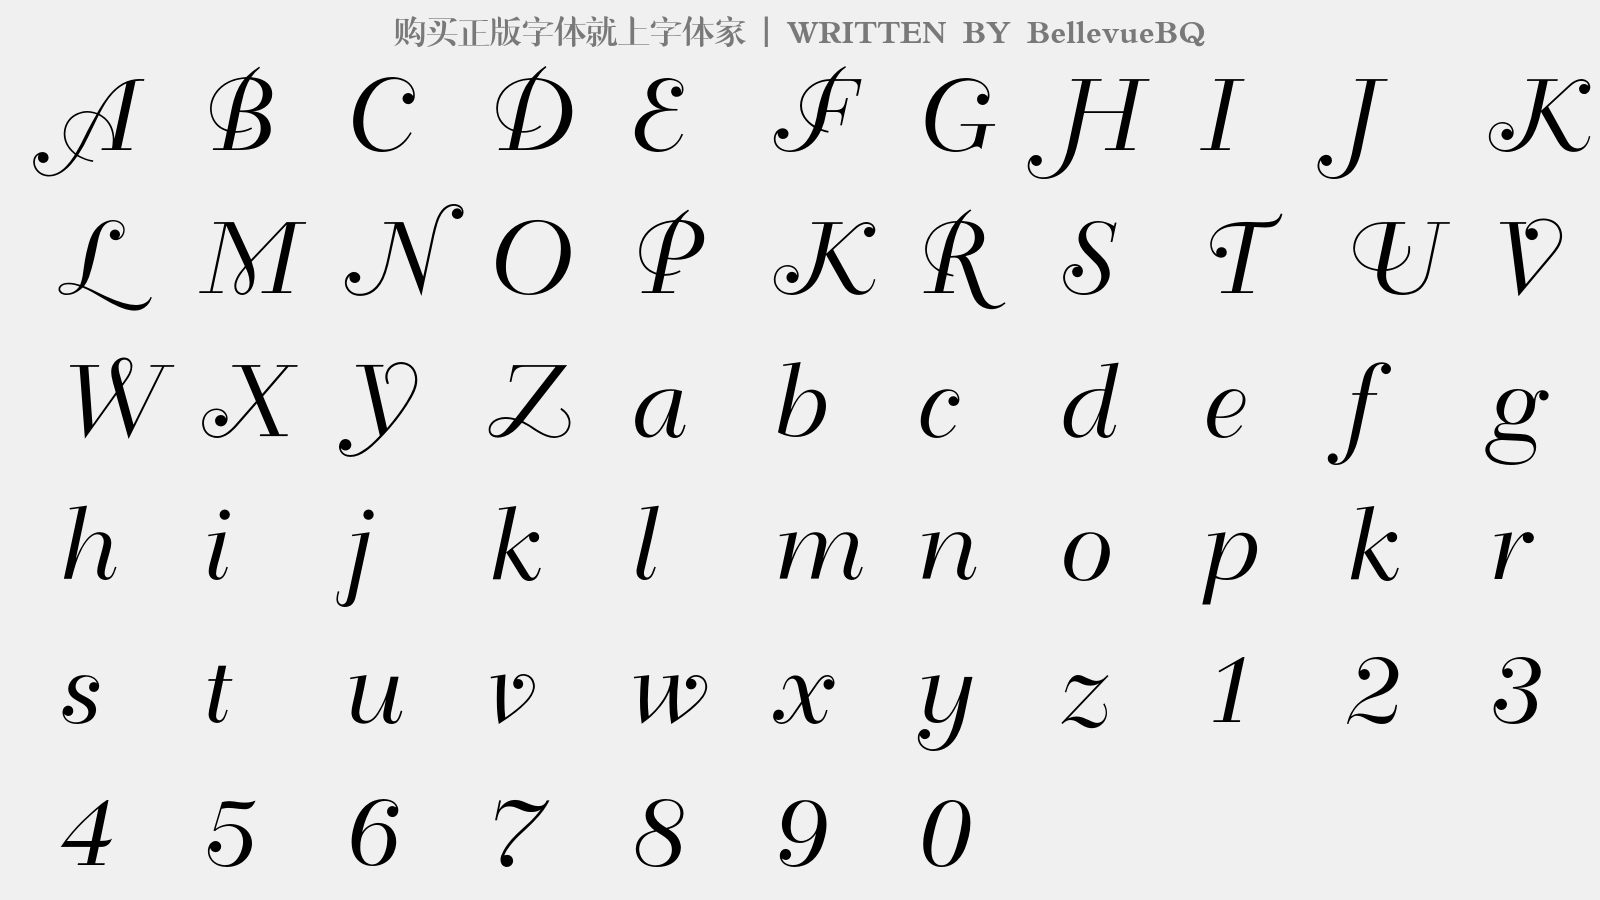 古罗马字体26字母图片